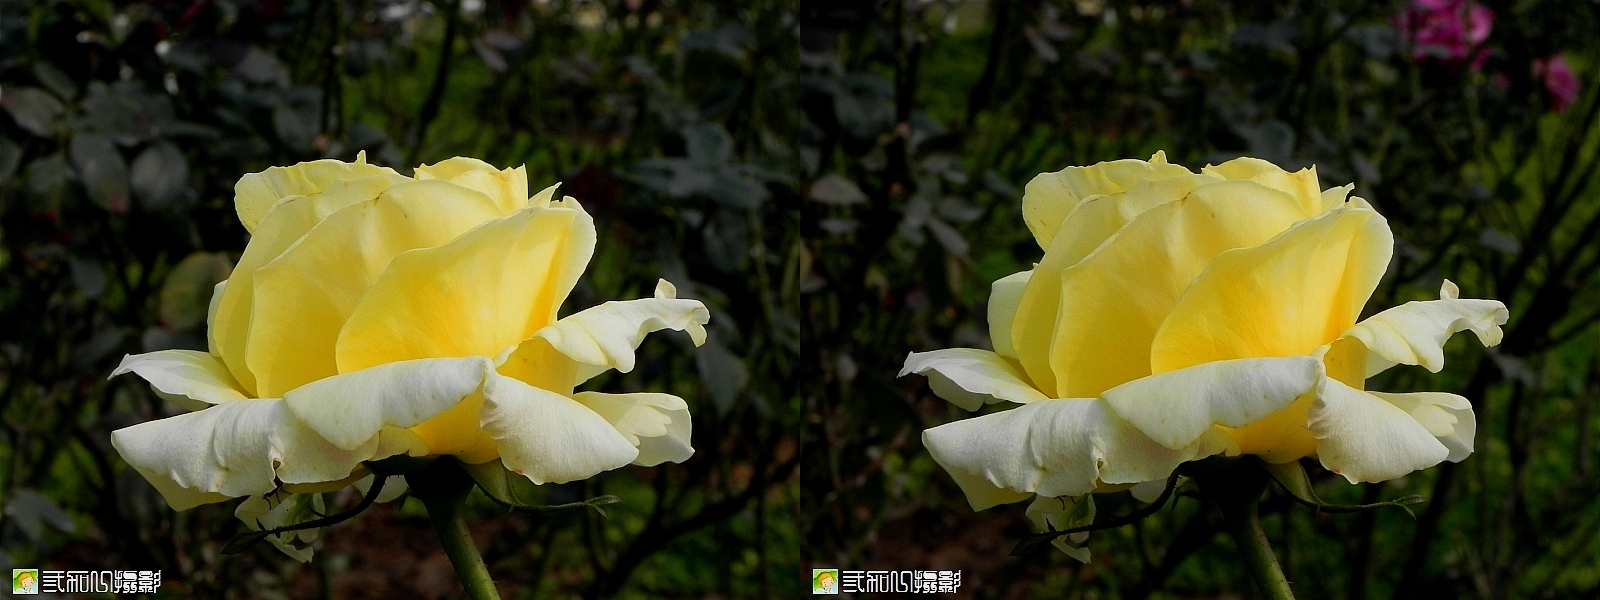 3玫瑰 (9).jpg